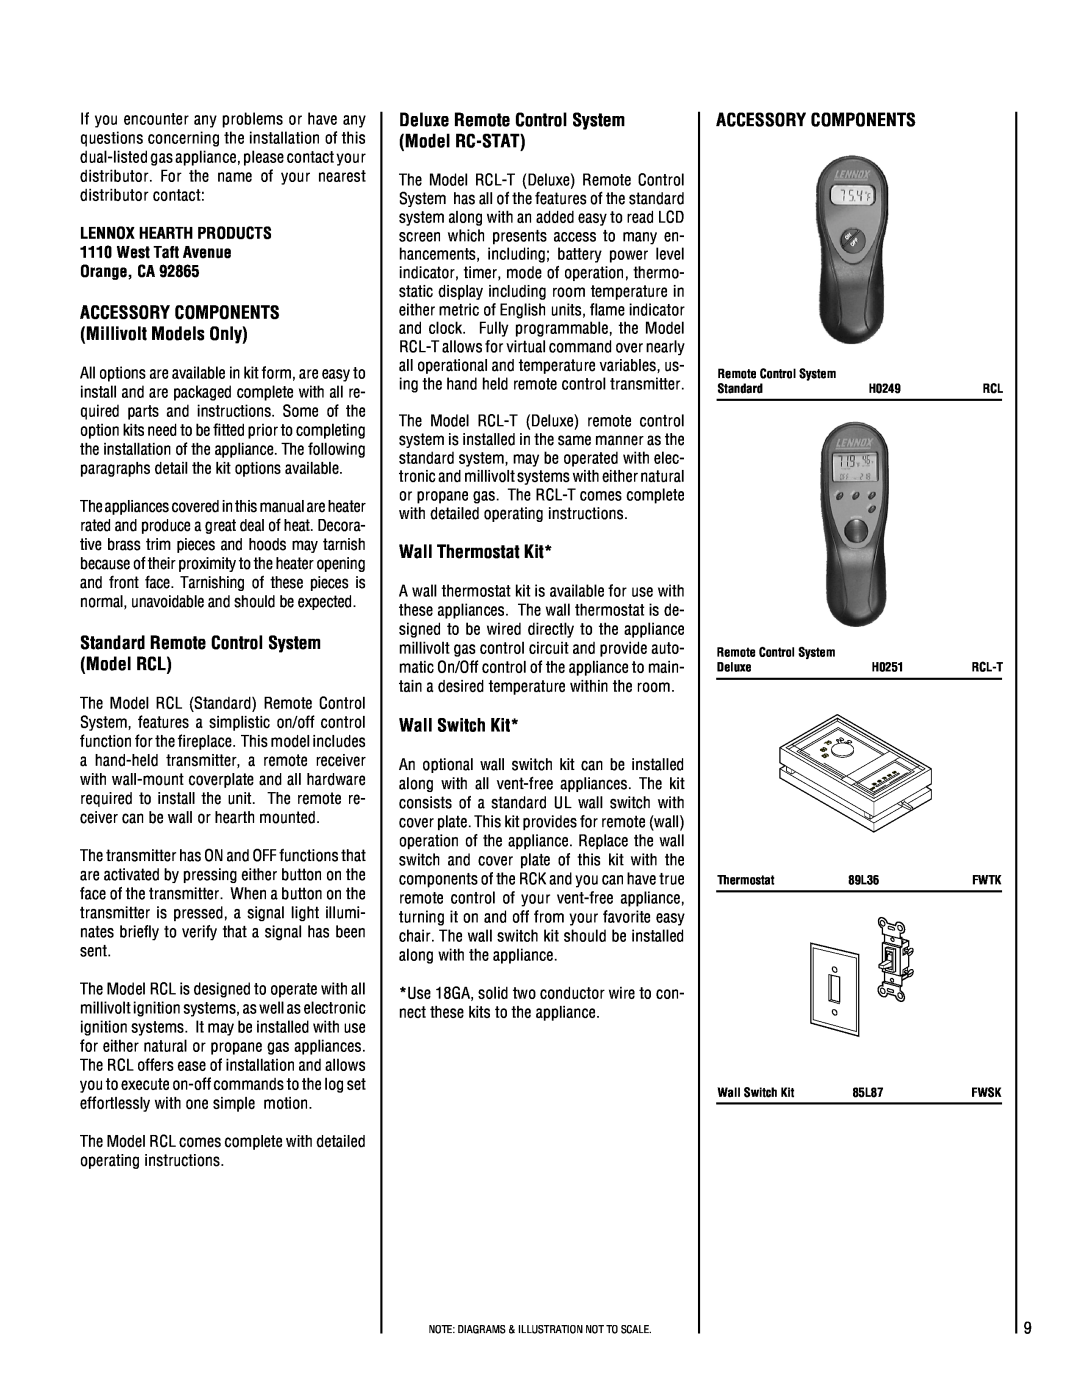 Lennox Hearth SHGL-24MP-R dimensions Standard Remote Control System Model RCL, Deluxe Remote Control System Model RC-STAT 